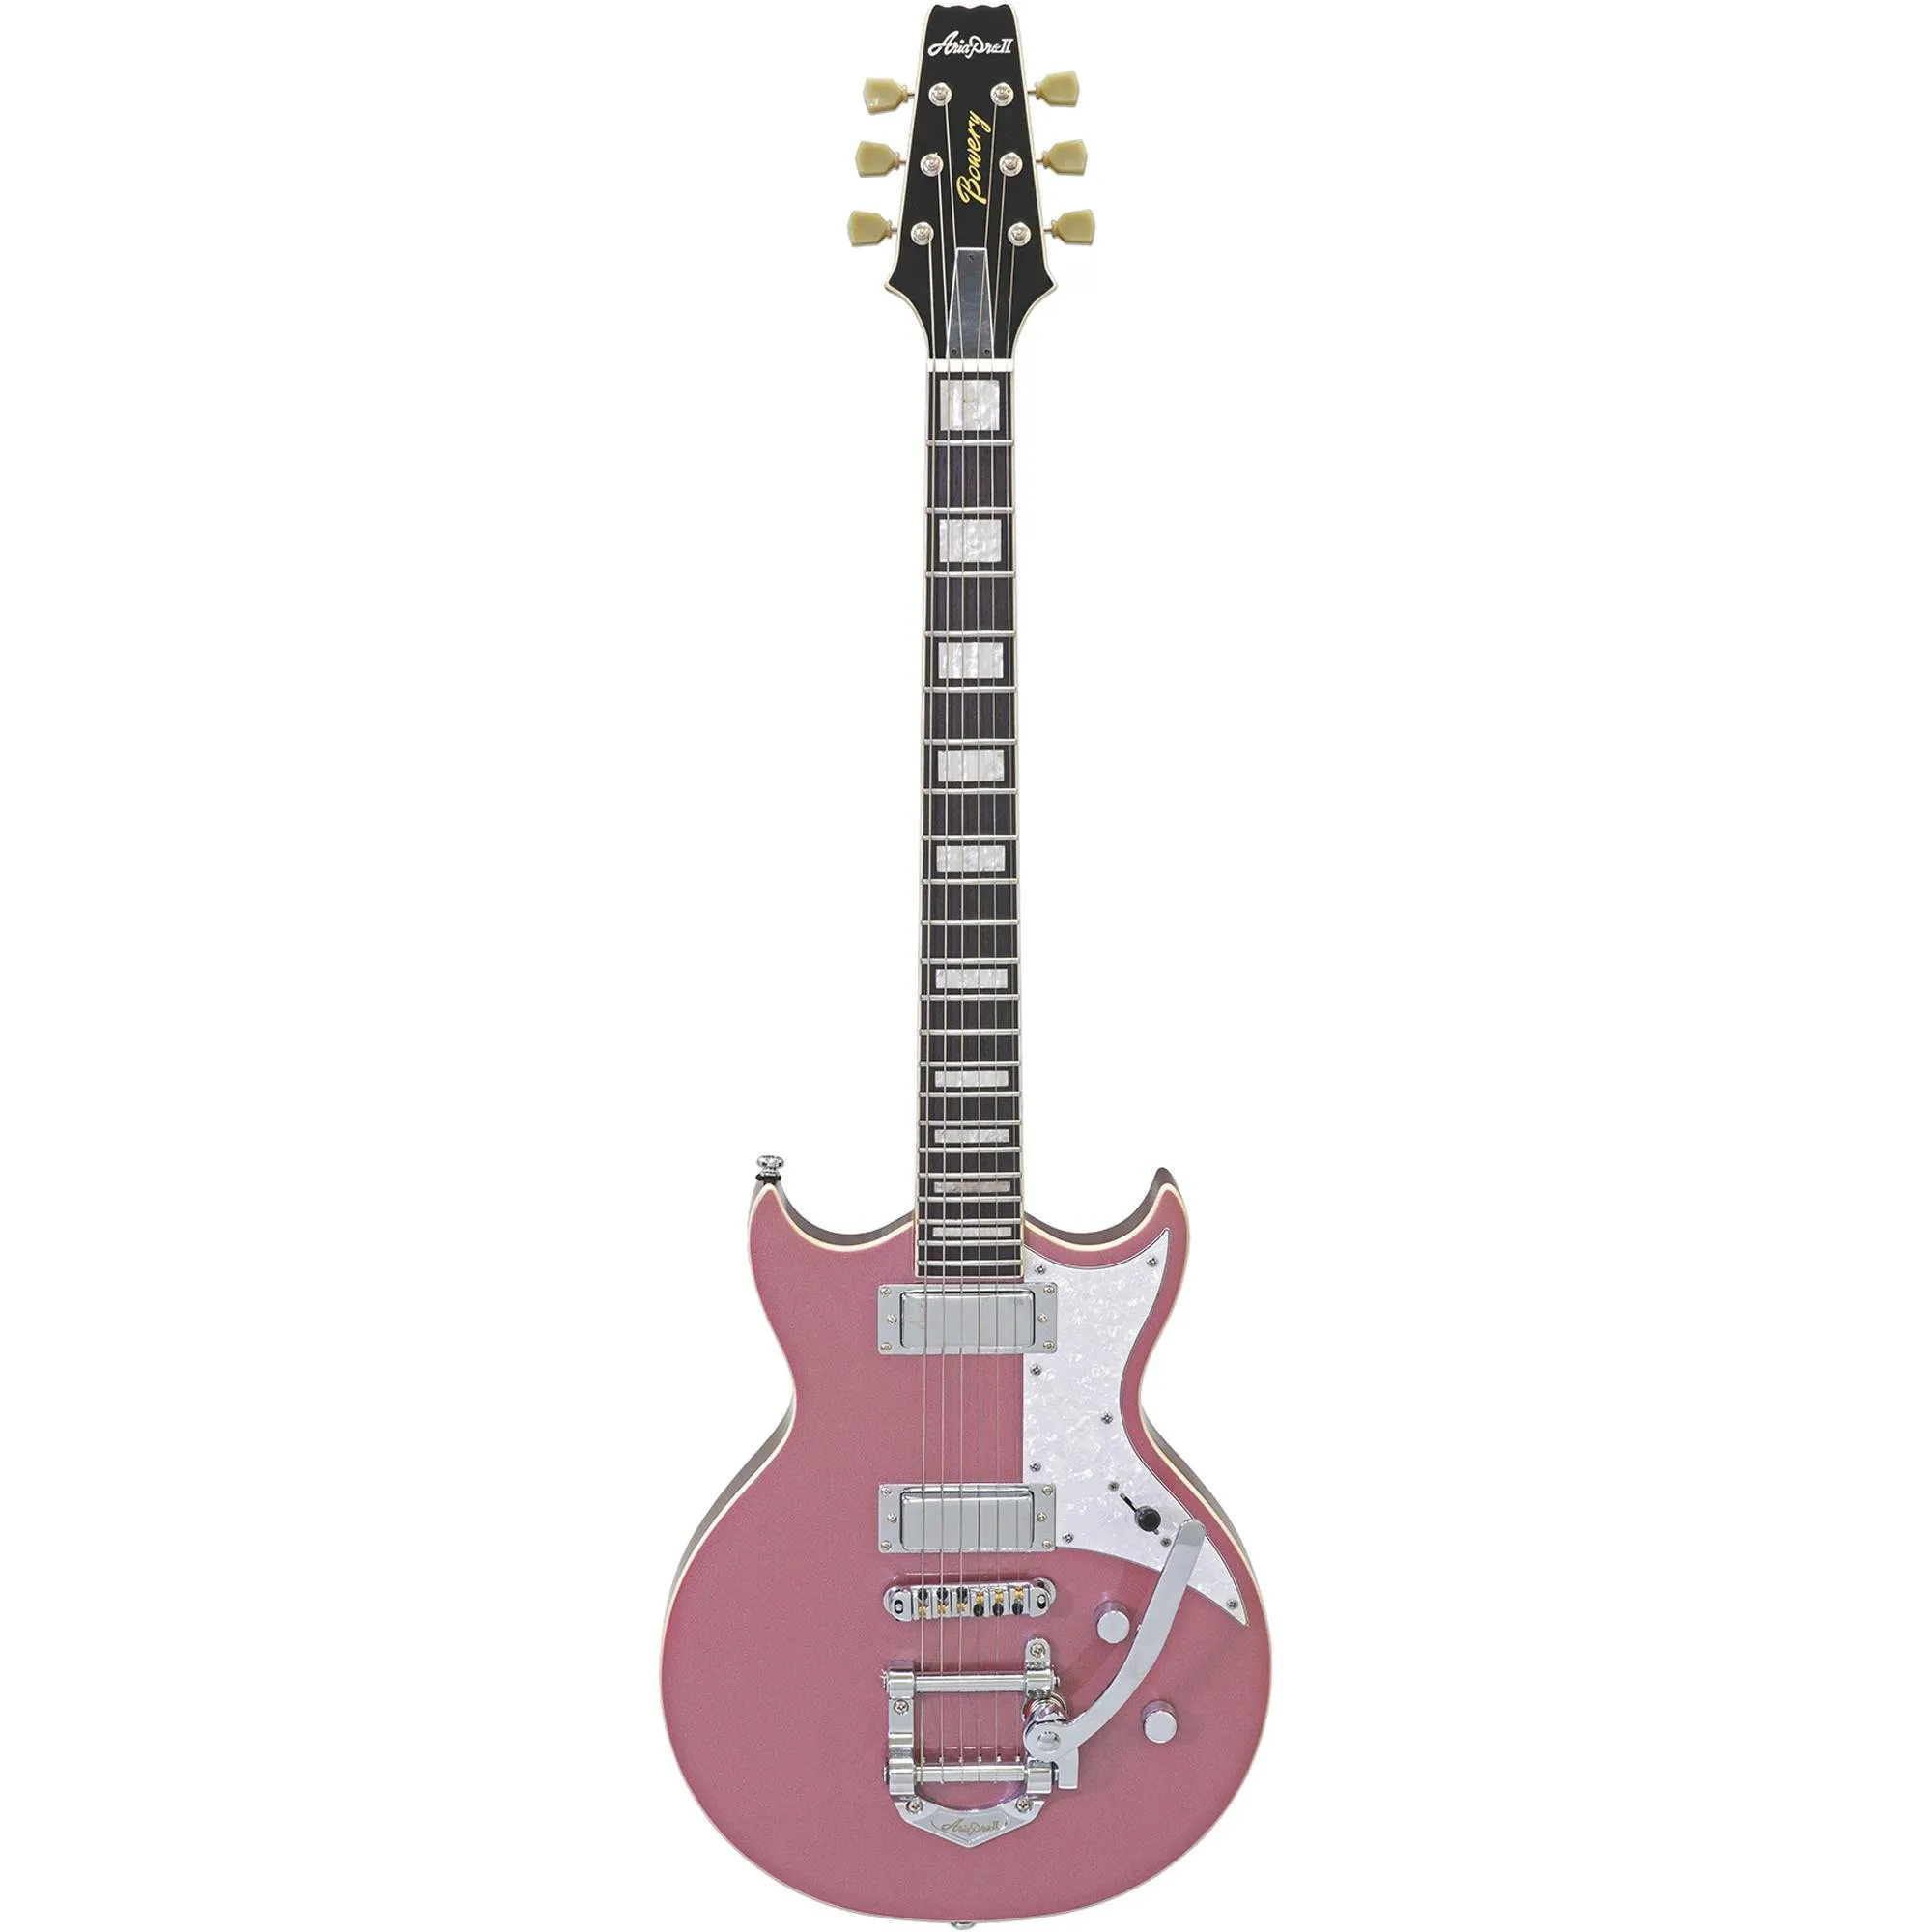 Guitarra Aria Pro II 212-MK2 Bowery Cadillac Pink por 5.054,00 à vista no boleto/pix ou parcele em até 12x sem juros. Compre na loja Mundomax!